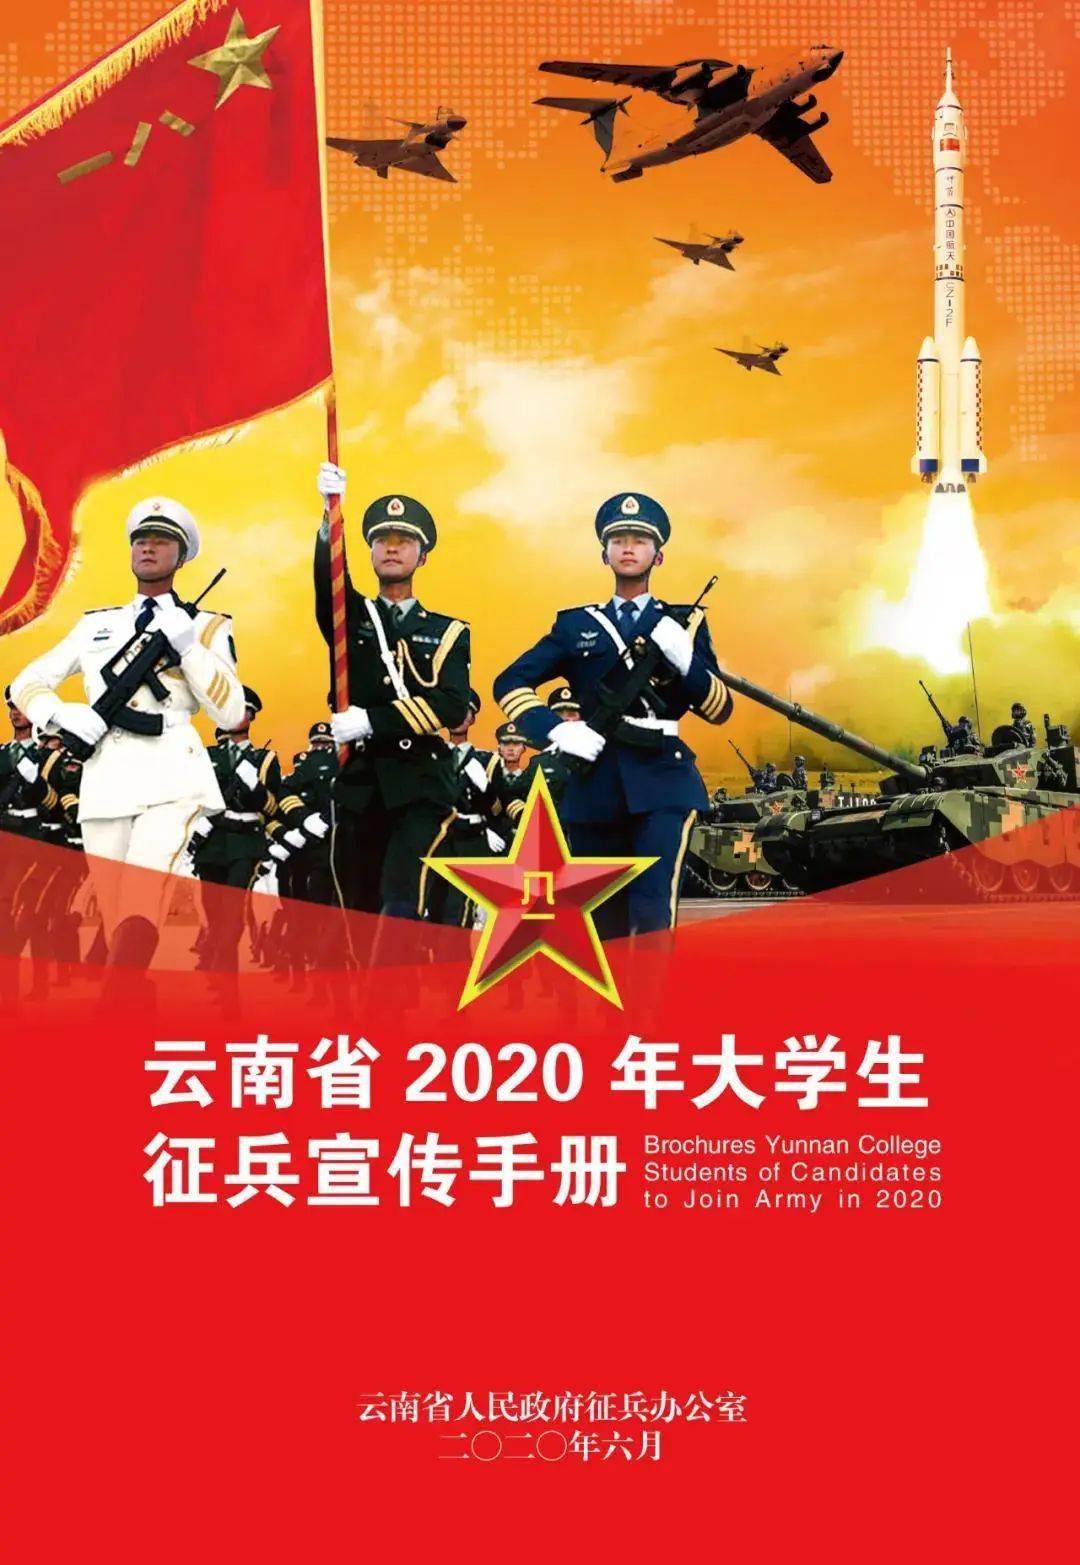 快收藏|云南省2020年大学生征兵宣传手册_素材